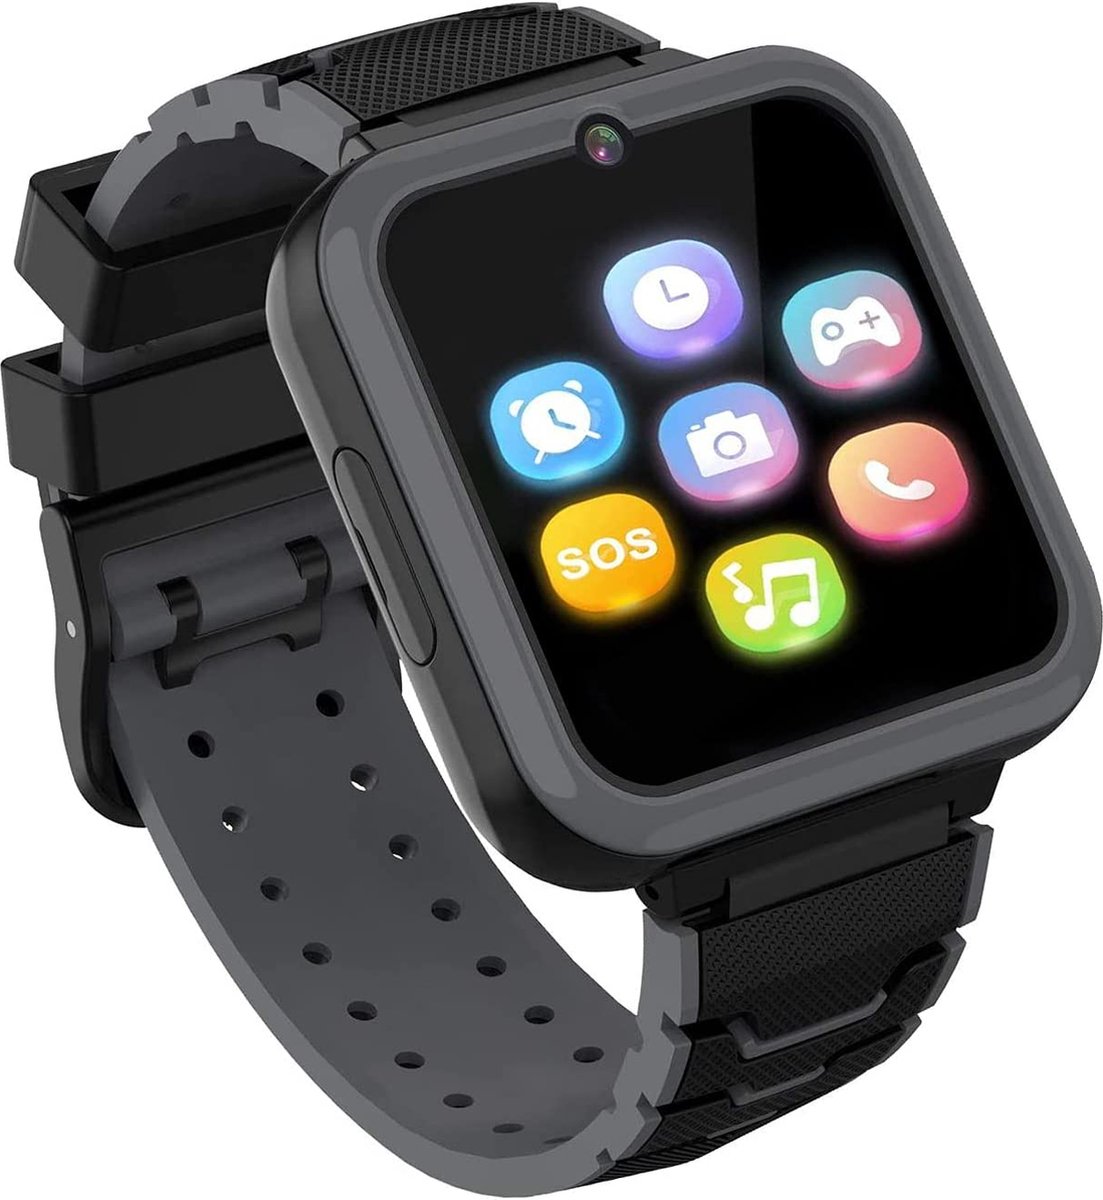 Kids Smartwatch Telefoon voor jongens meisjes met HD Touchscreen, Smart Horloge voor kinderen met Games Muziekspeler Twee-weg Call SOS Zaklamp Calculator Recorder Wekker, Verjaardagscadeaus voor 3-12Y (ZWART)